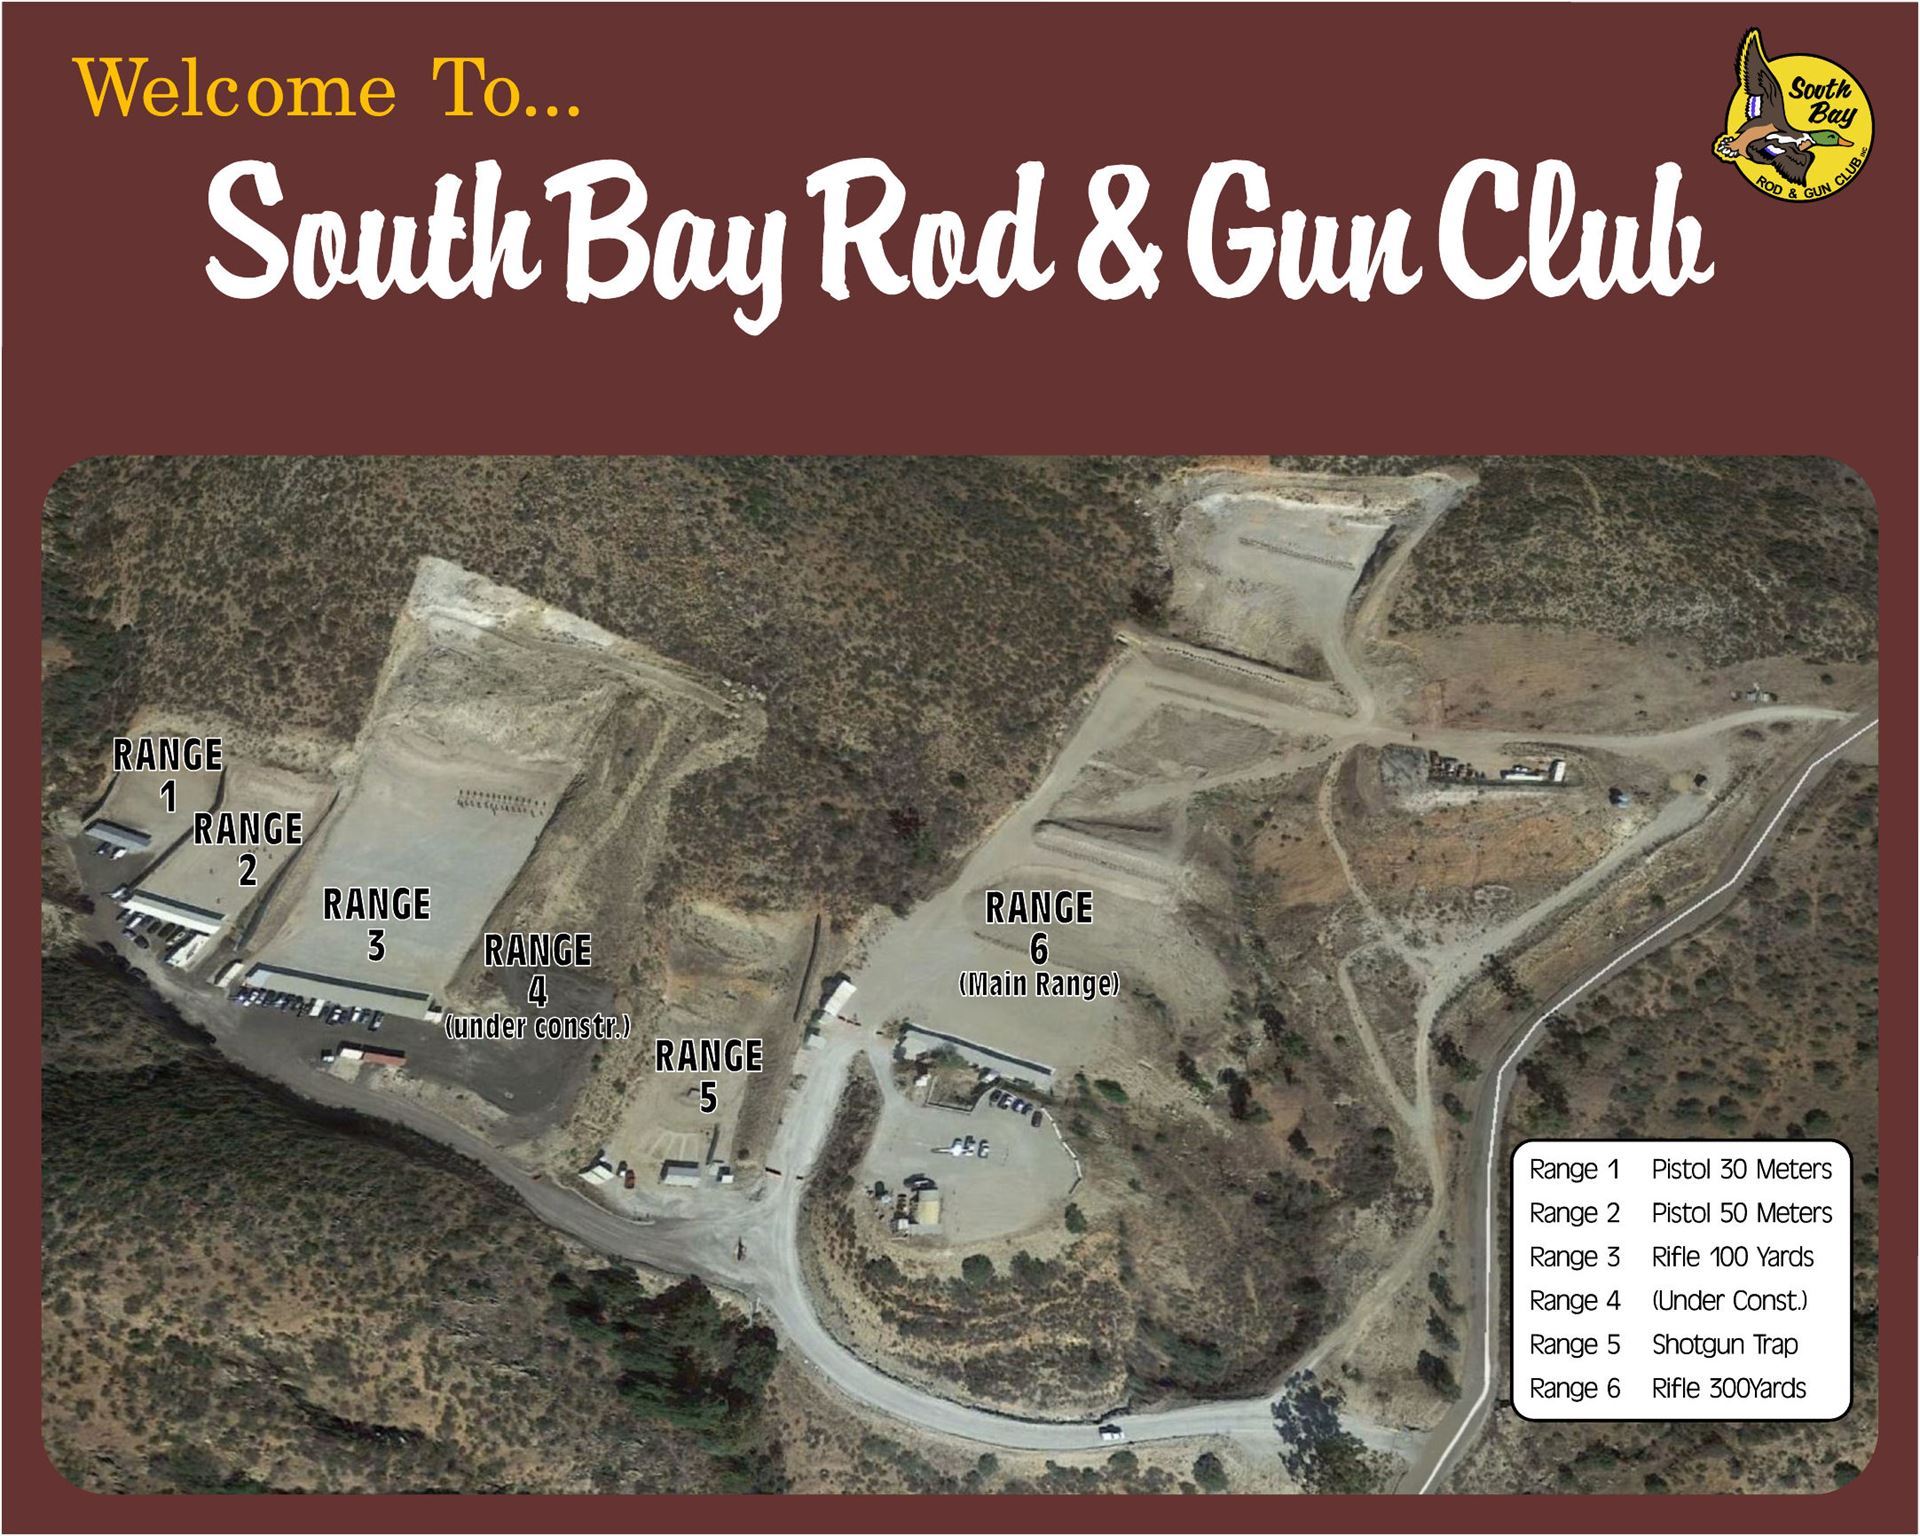 South Bay Rod & Gun Club - Home